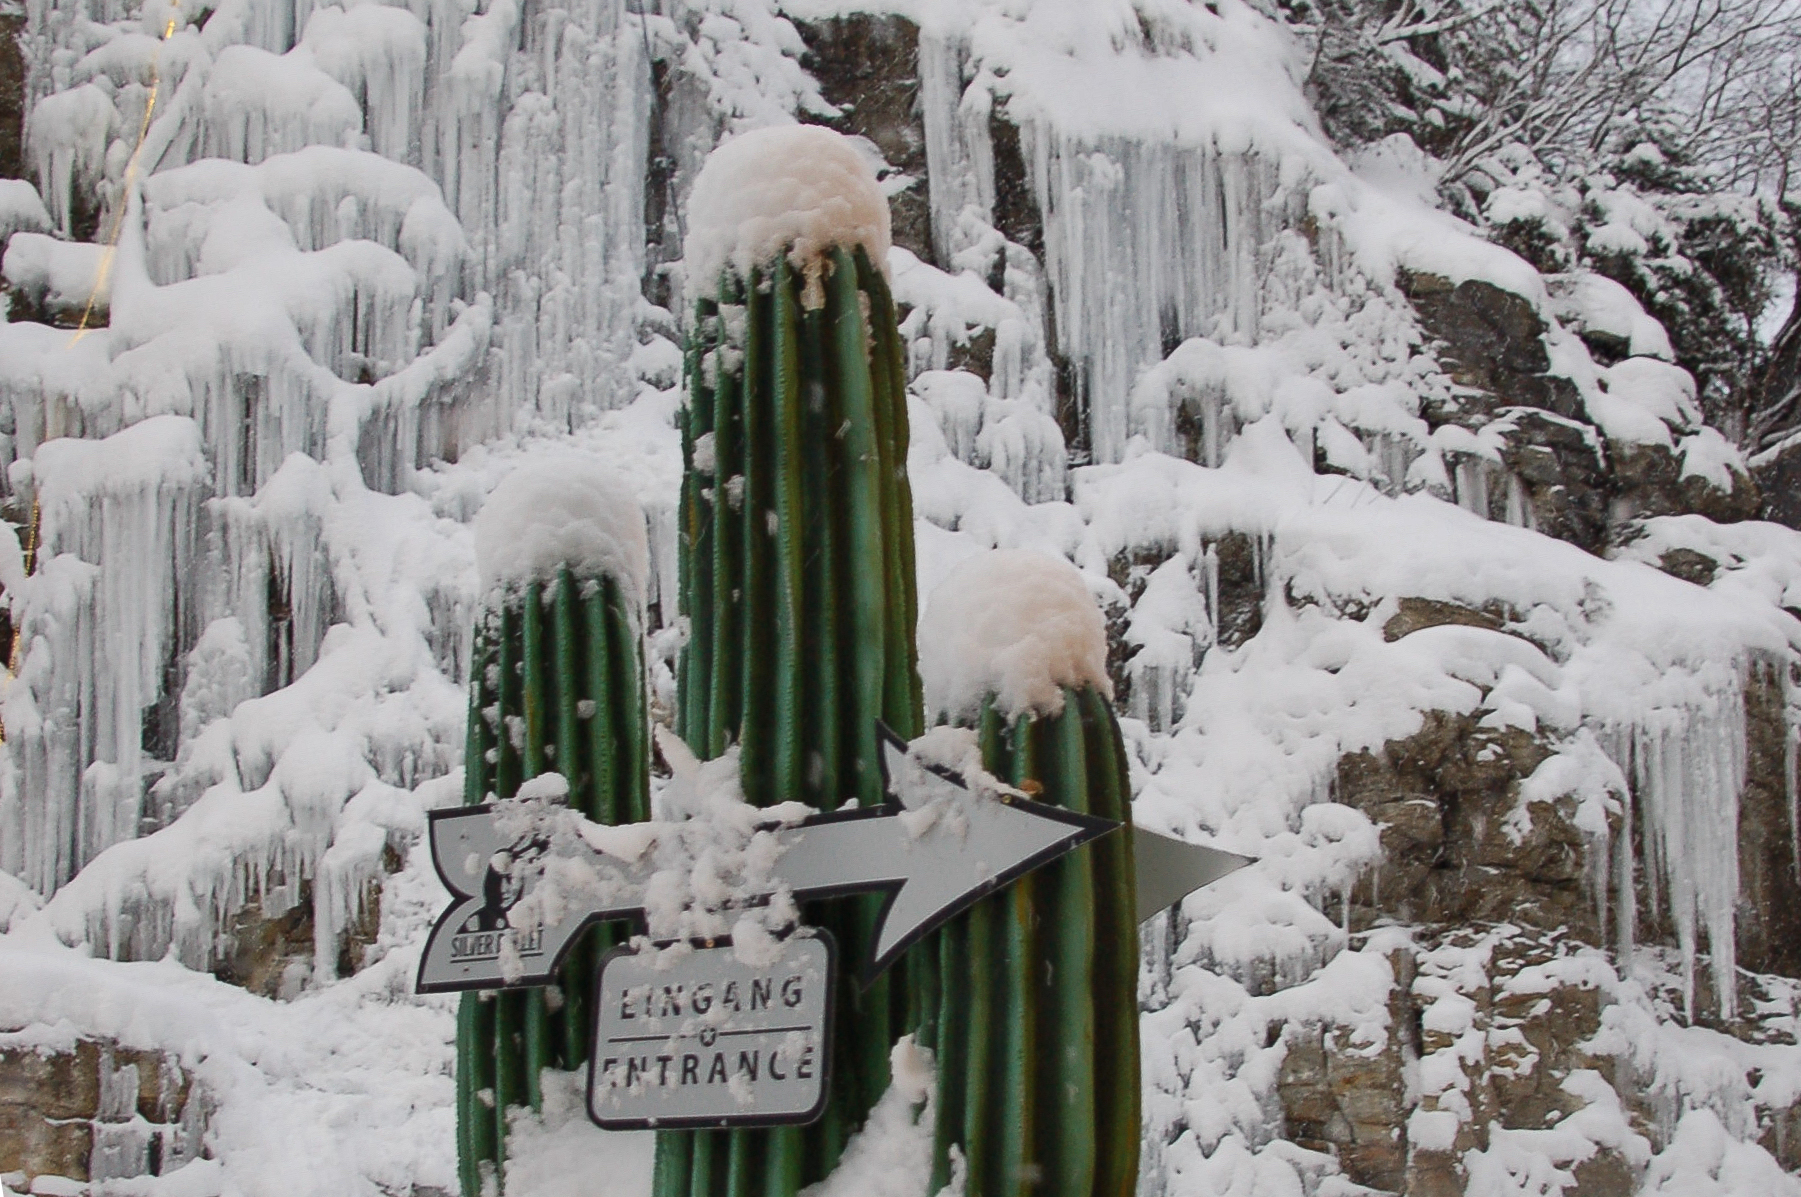 Ein mit Schnee überdeckter Saguaro-Kaktus vor einem gefrorenem Wasserfall im Winter in Gastein